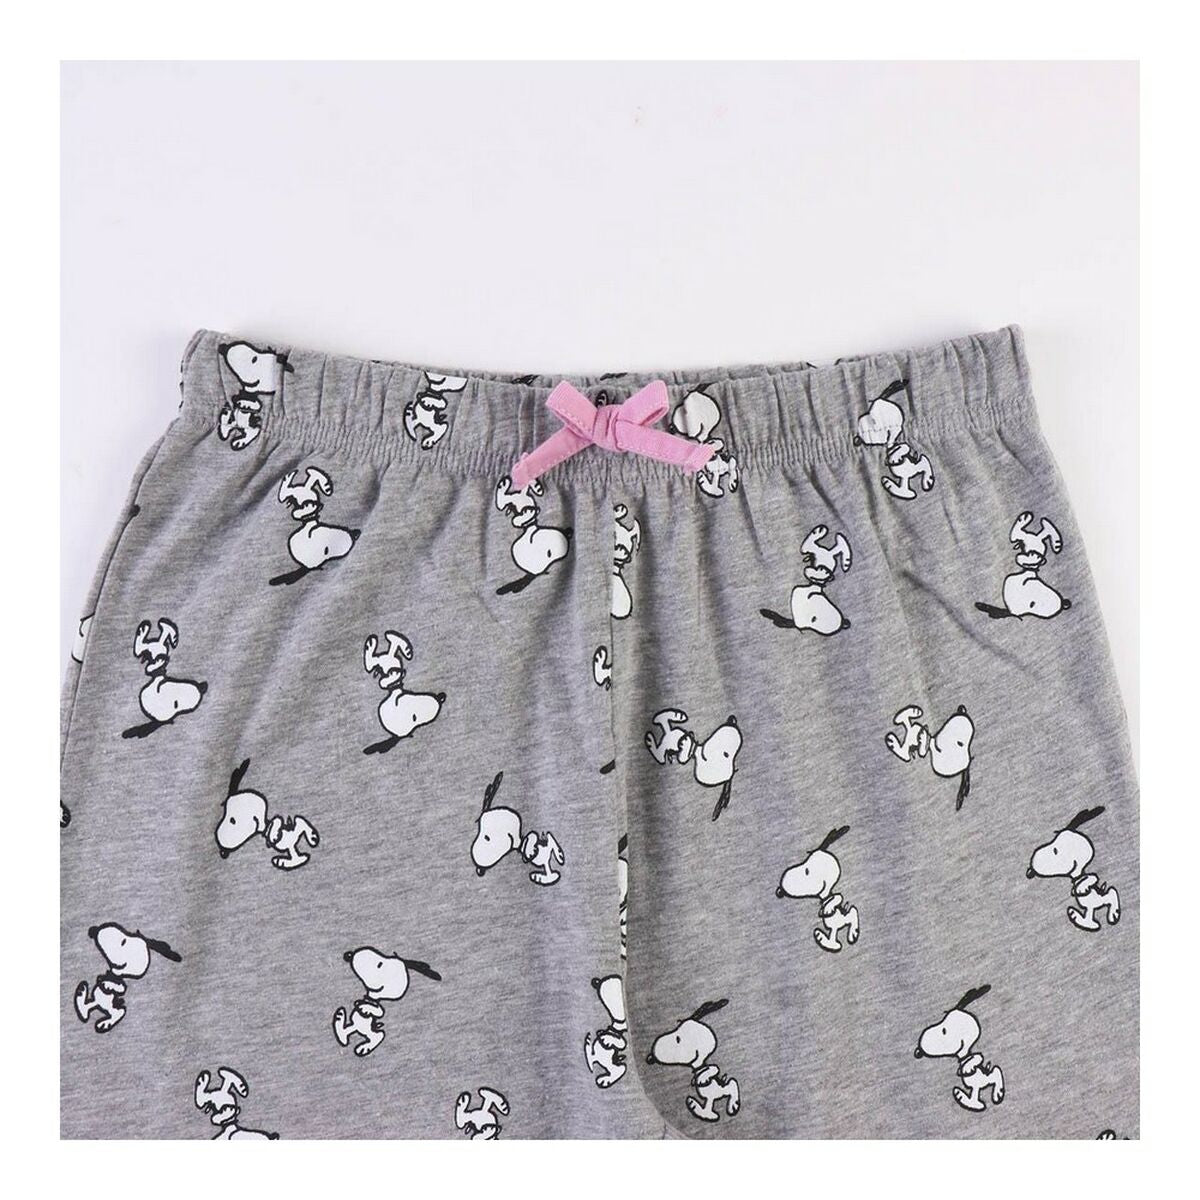 Pyjama Snoopy Femme Gris